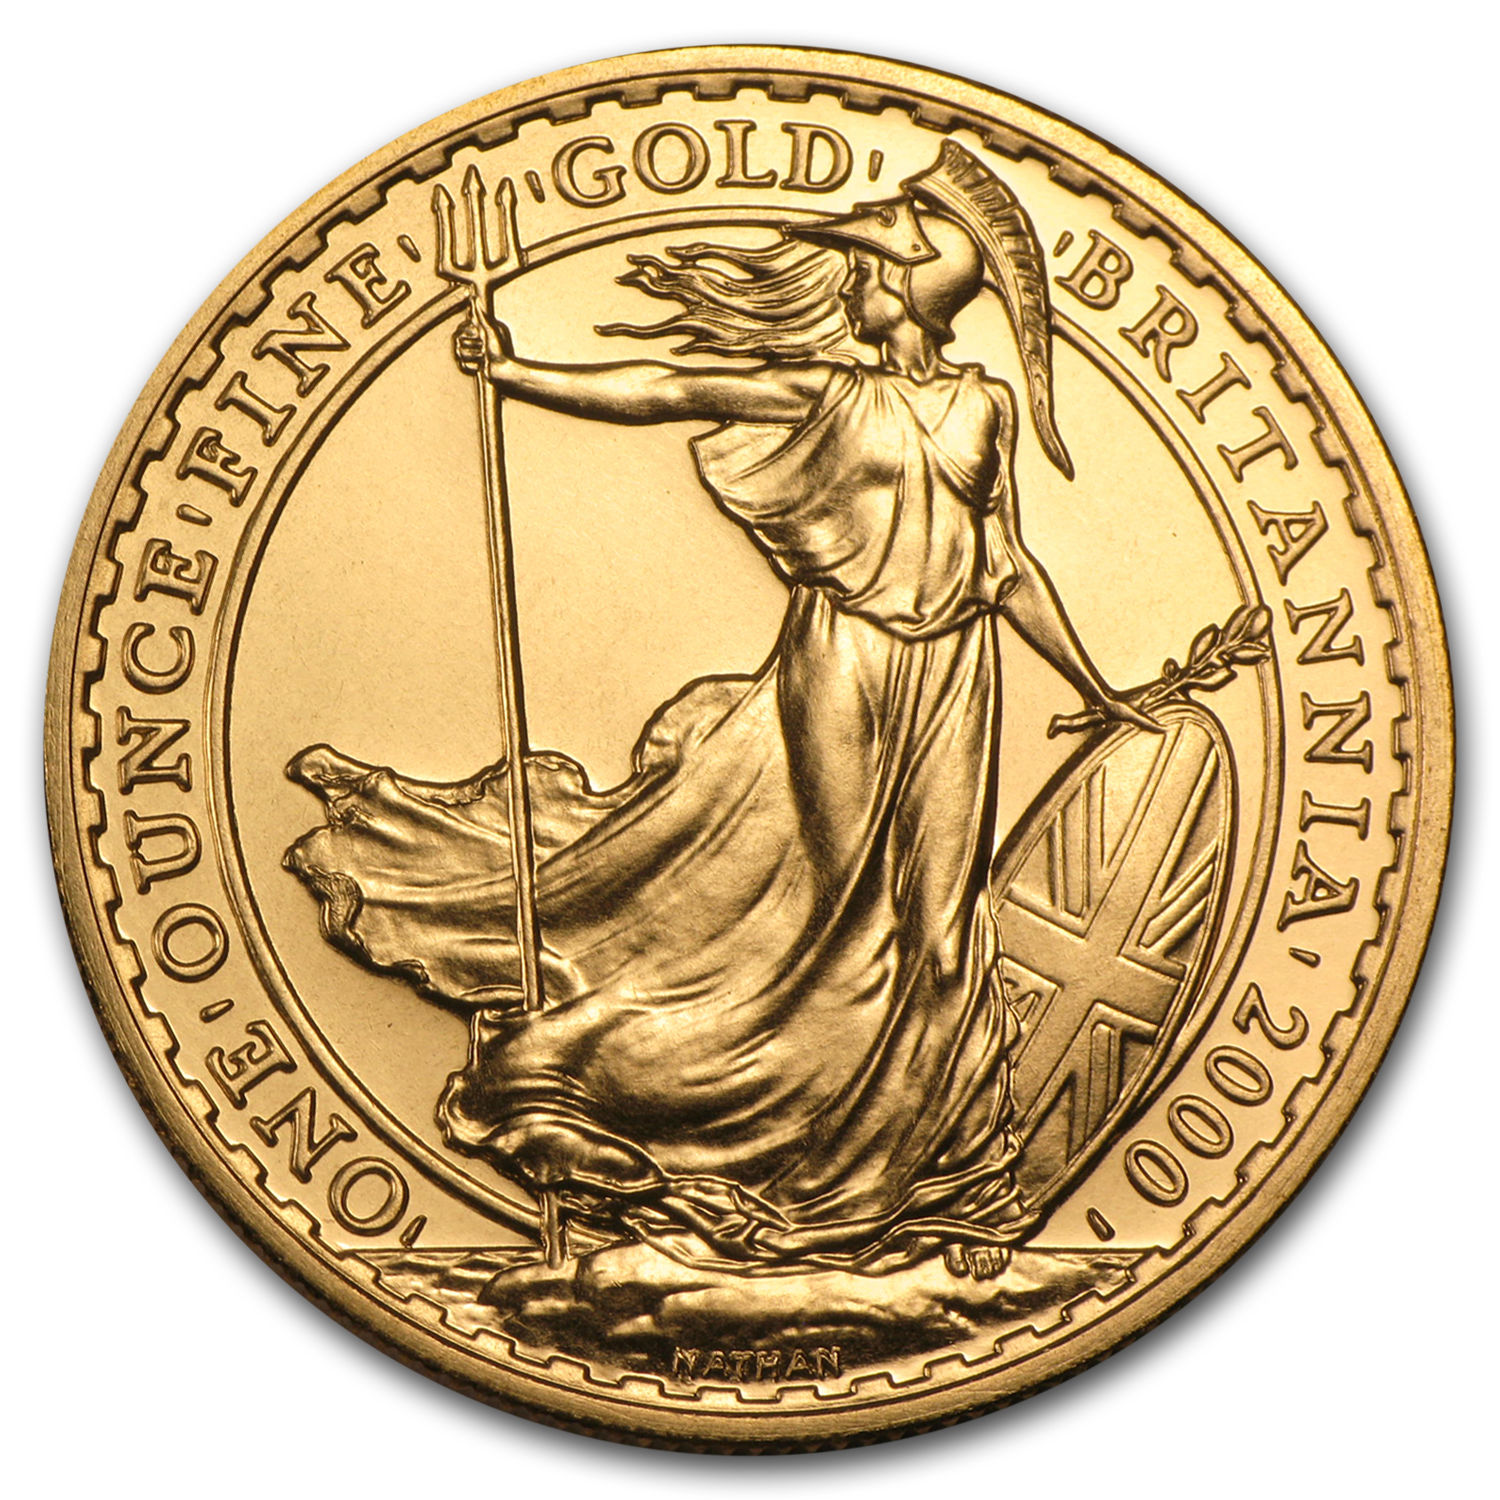 2000 Great Britain 1 oz Gold Britannia BU - SKU #12965